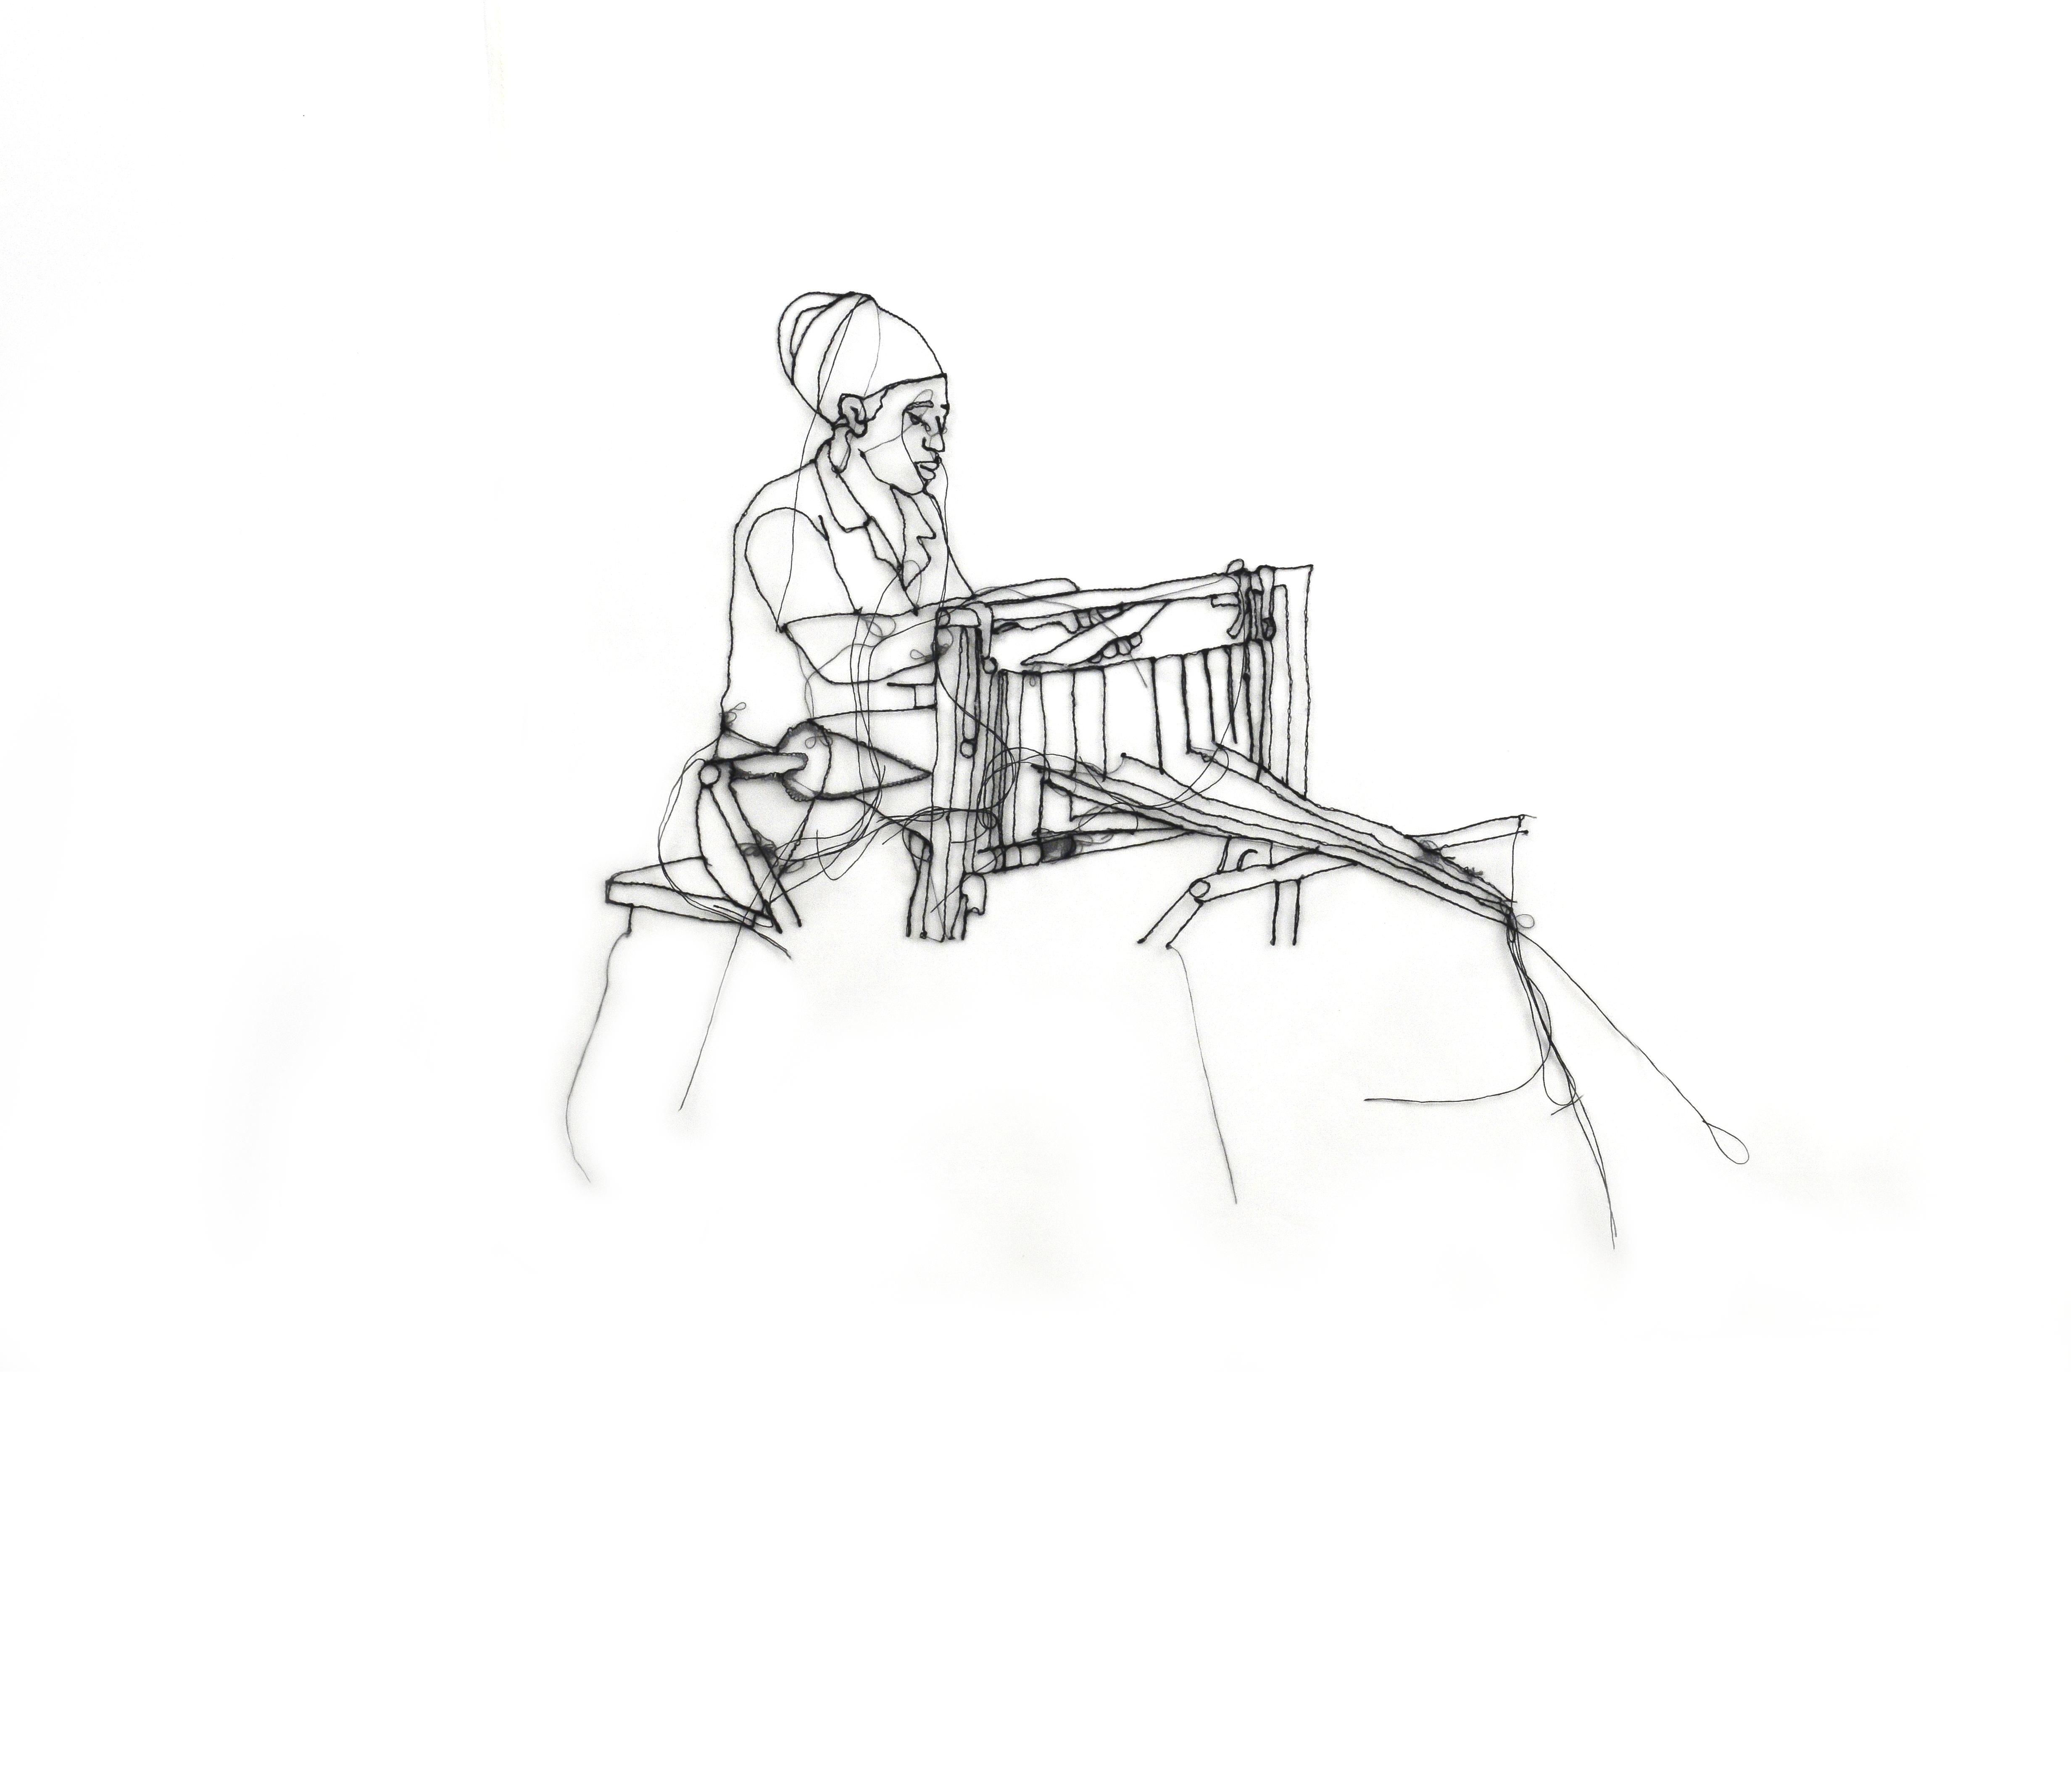 Tezgahta dokuma yapan bir kadının çizimi.